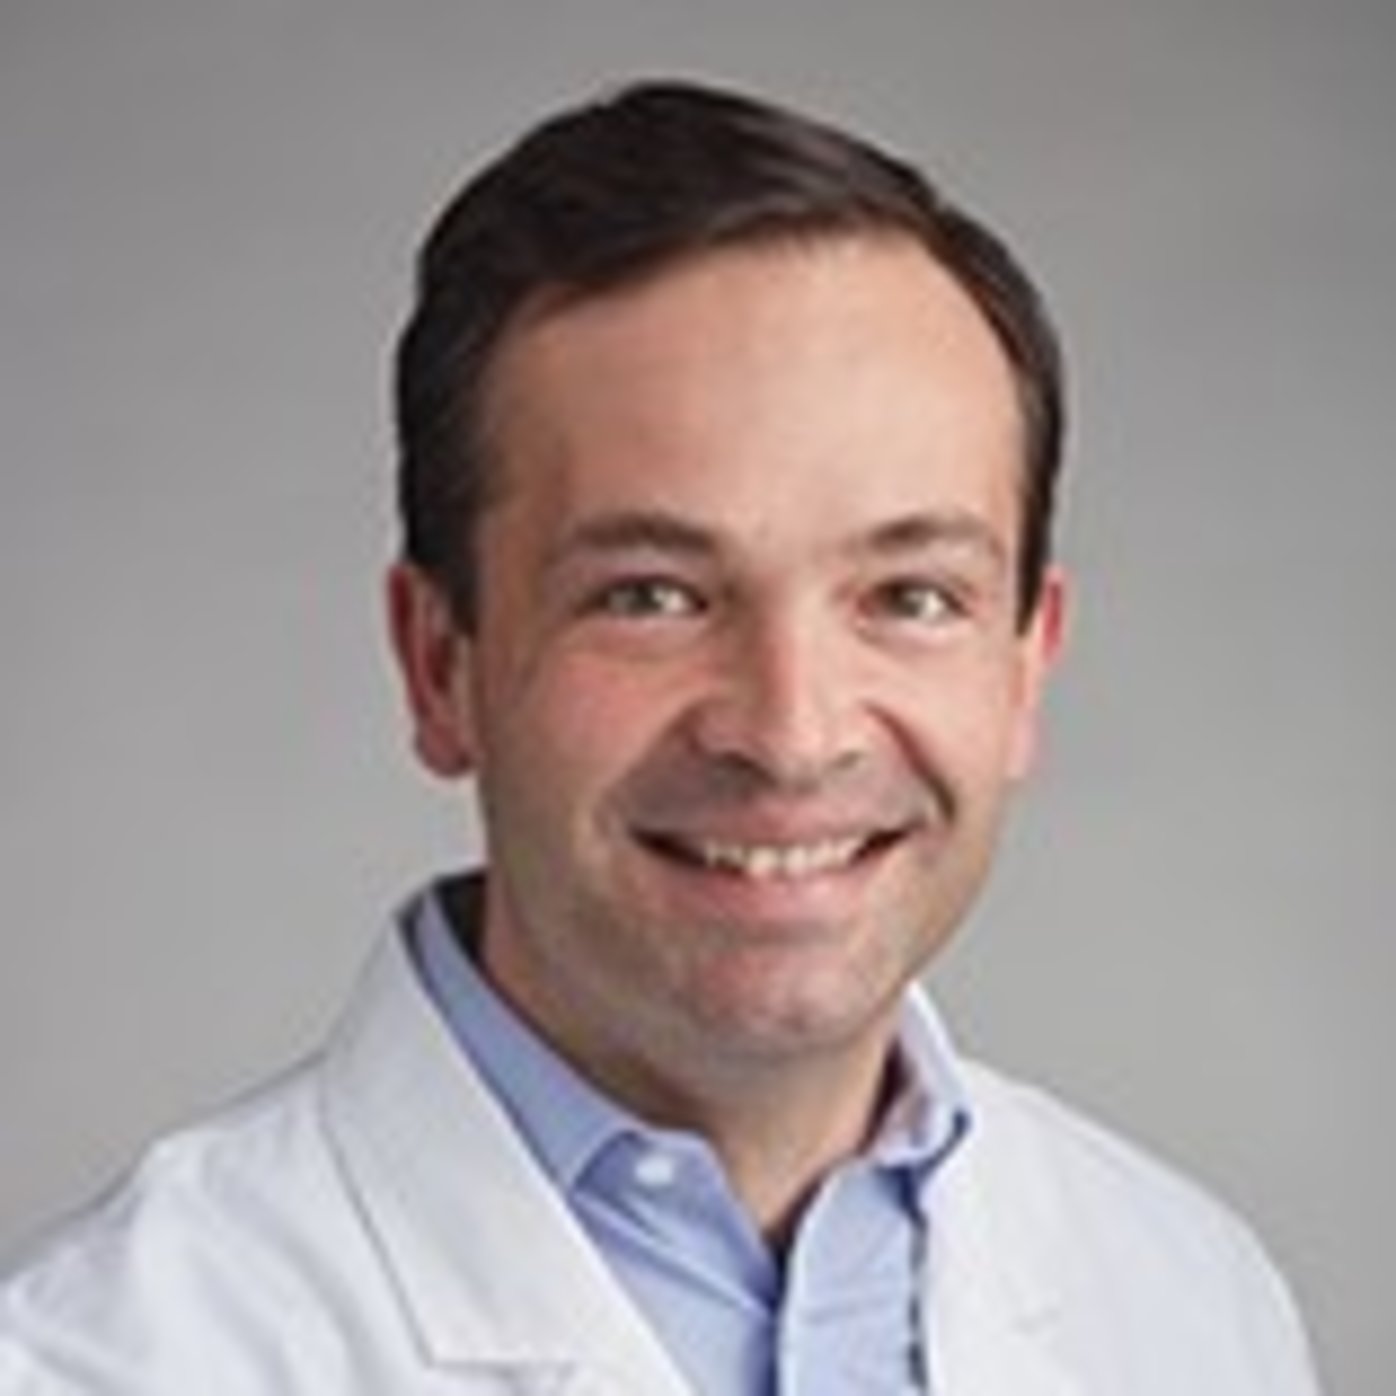 Dr. Darius Schneider